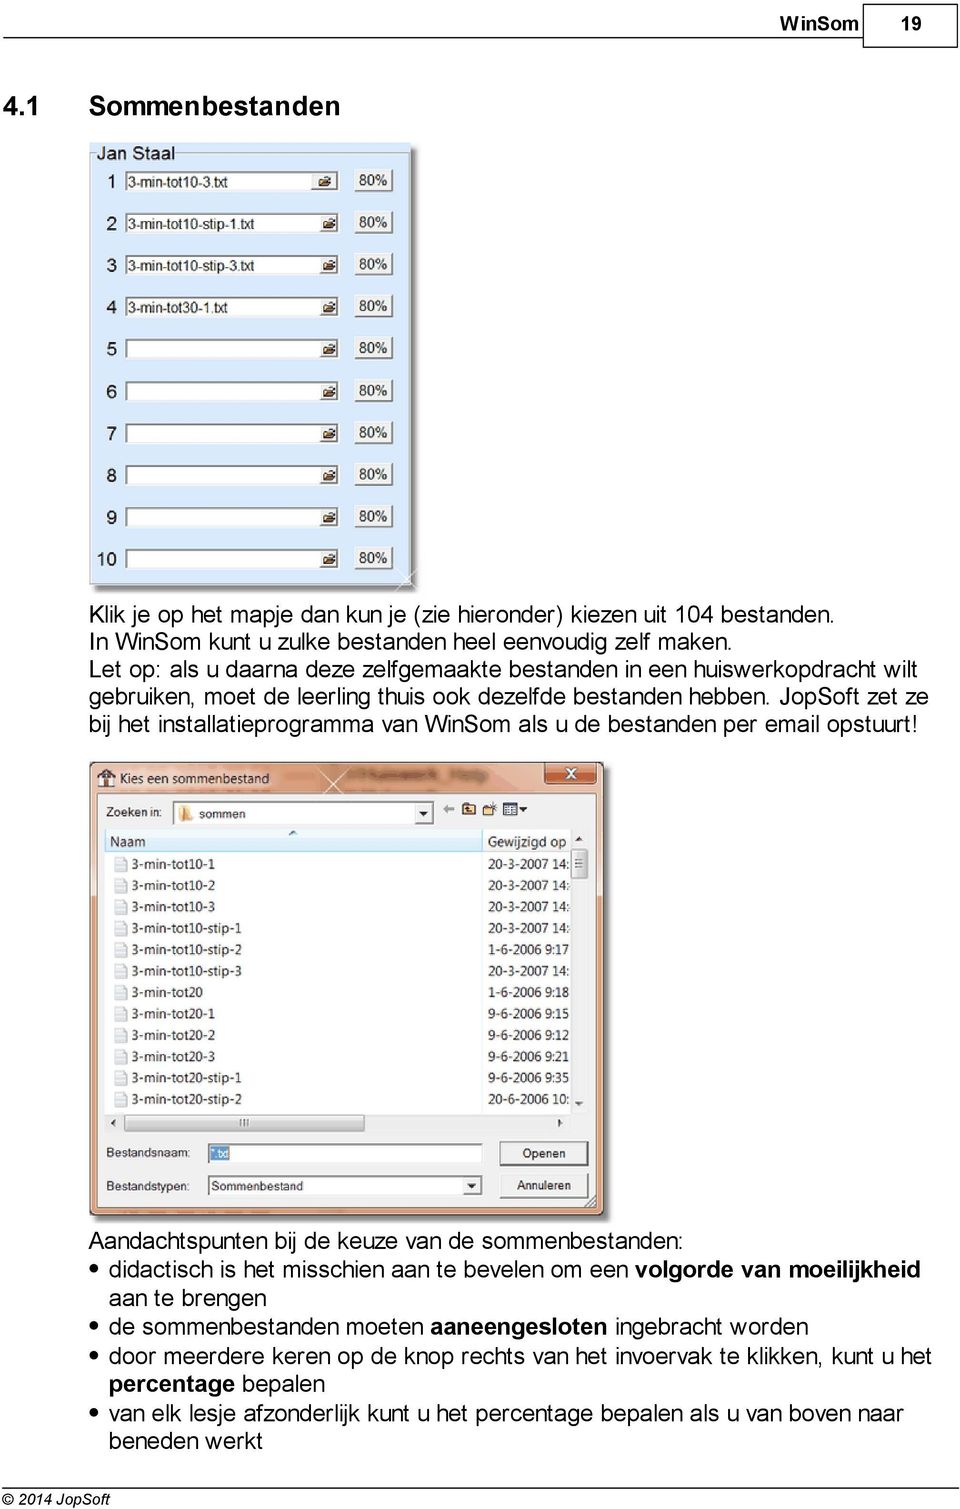 JopSoft zet ze bij het installatieprogramma van WinSom als u de bestanden per email opstuurt!